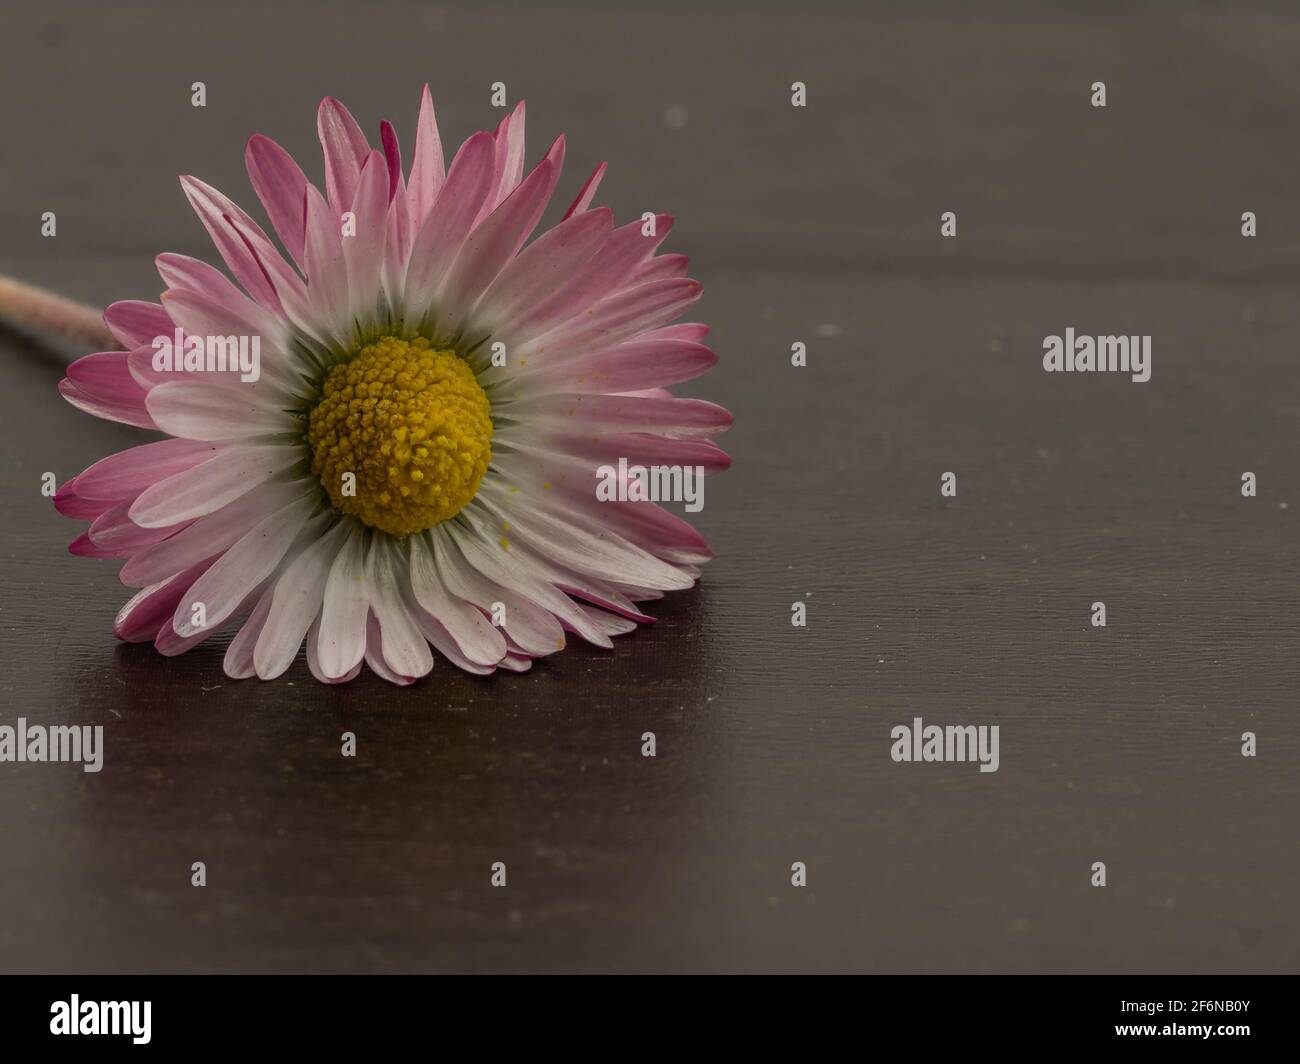 Nahaufnahme einer Gänseblümchen-Blume auf dunklem Hintergrund Stockfoto